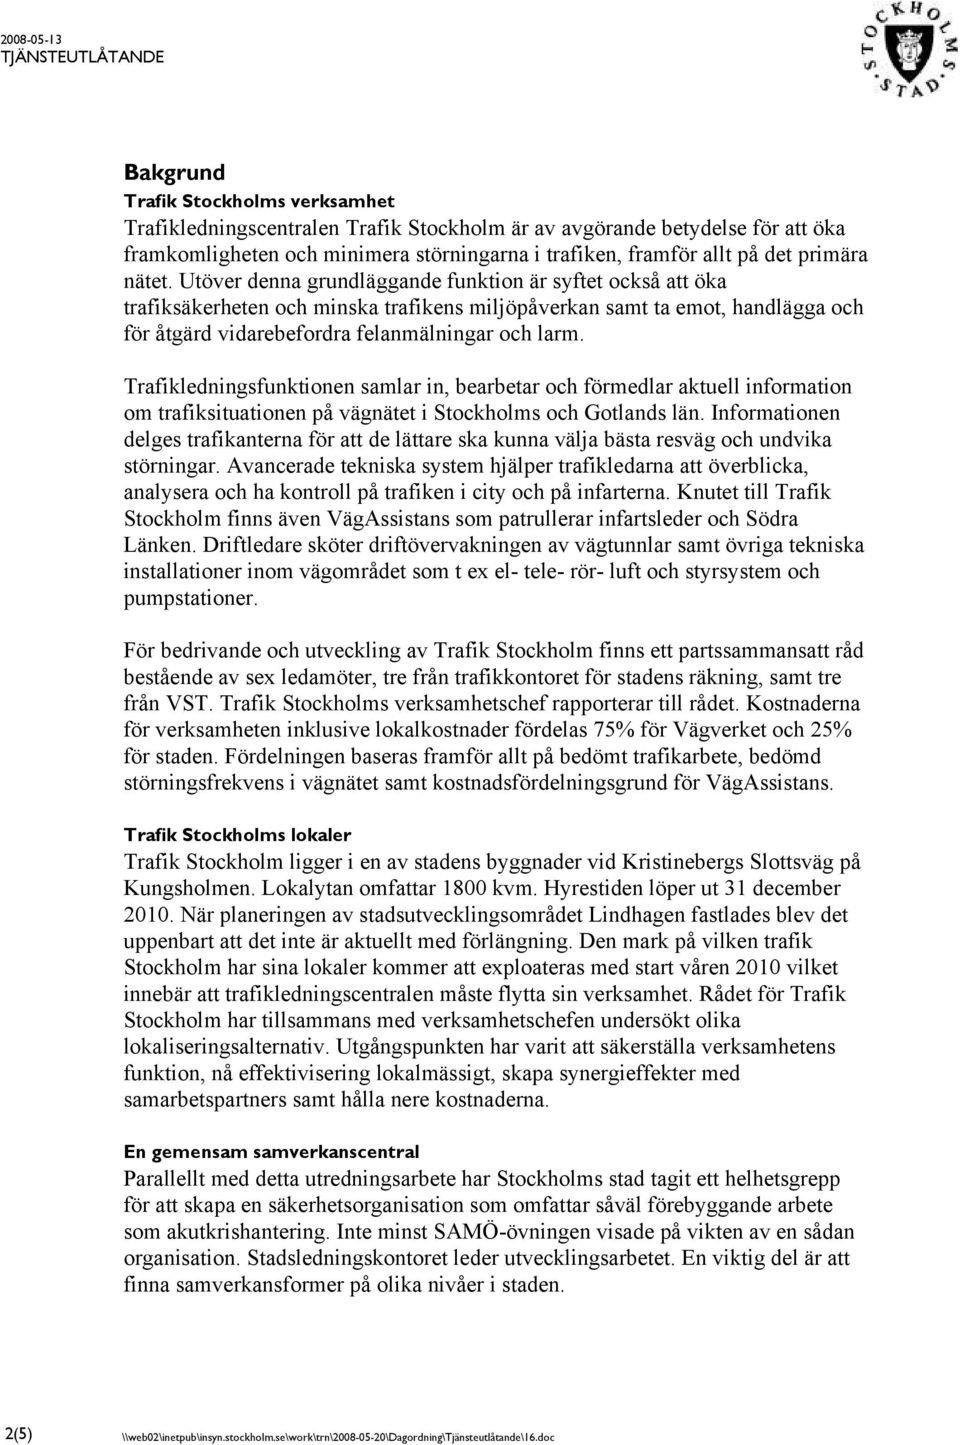 Trafikledningsfunktionen samlar in, bearbetar och förmedlar aktuell information om trafiksituationen på vägnätet i Stockholms och Gotlands län.